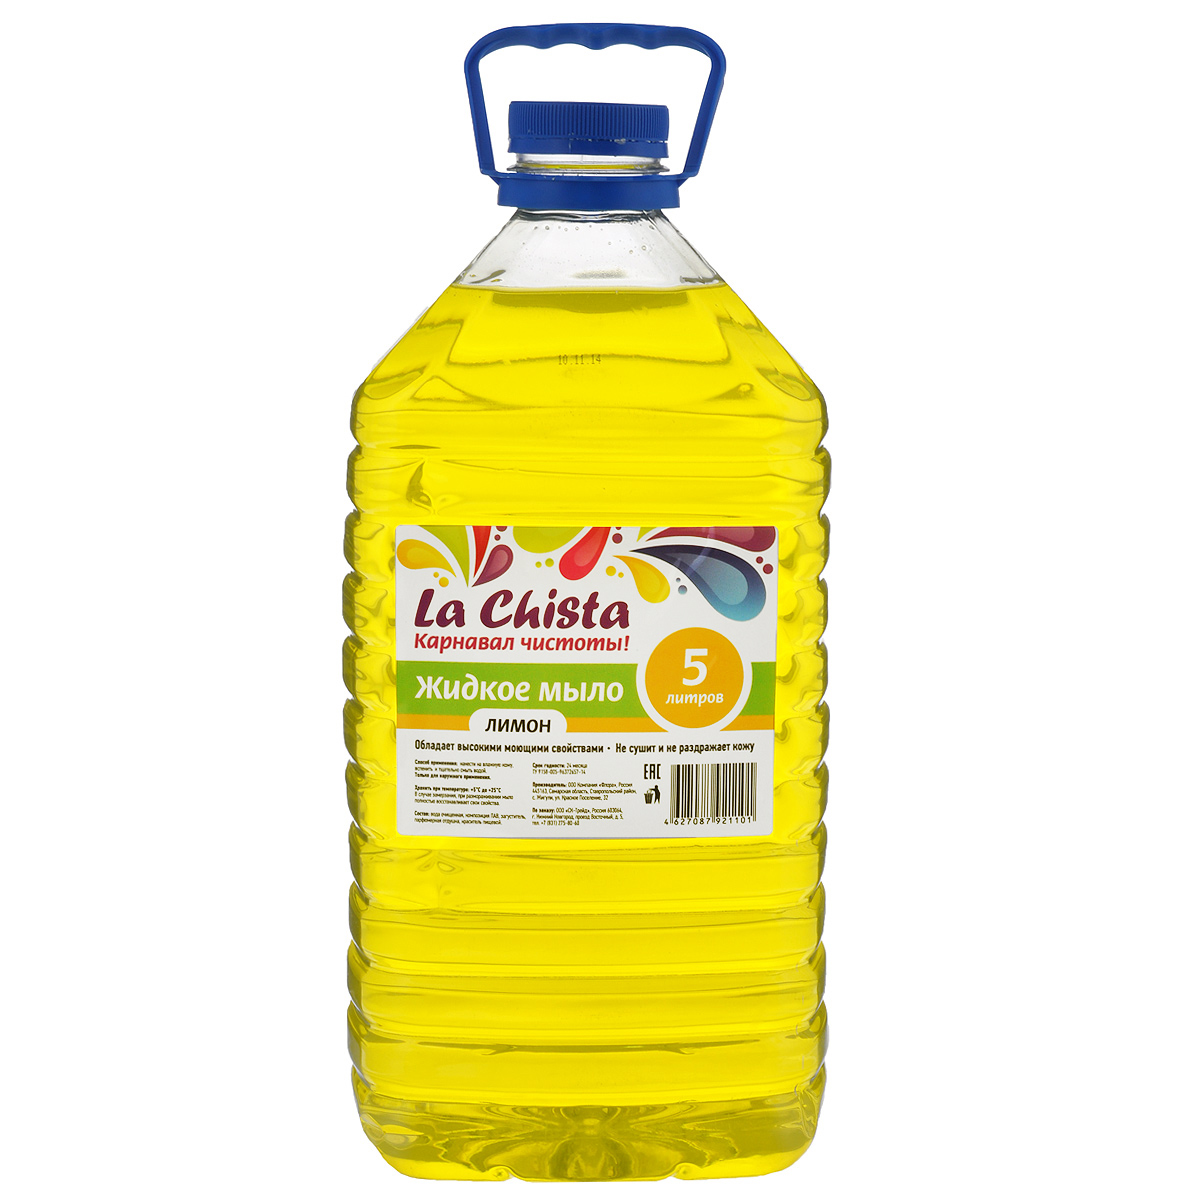 Мыло жидкое La Chista 